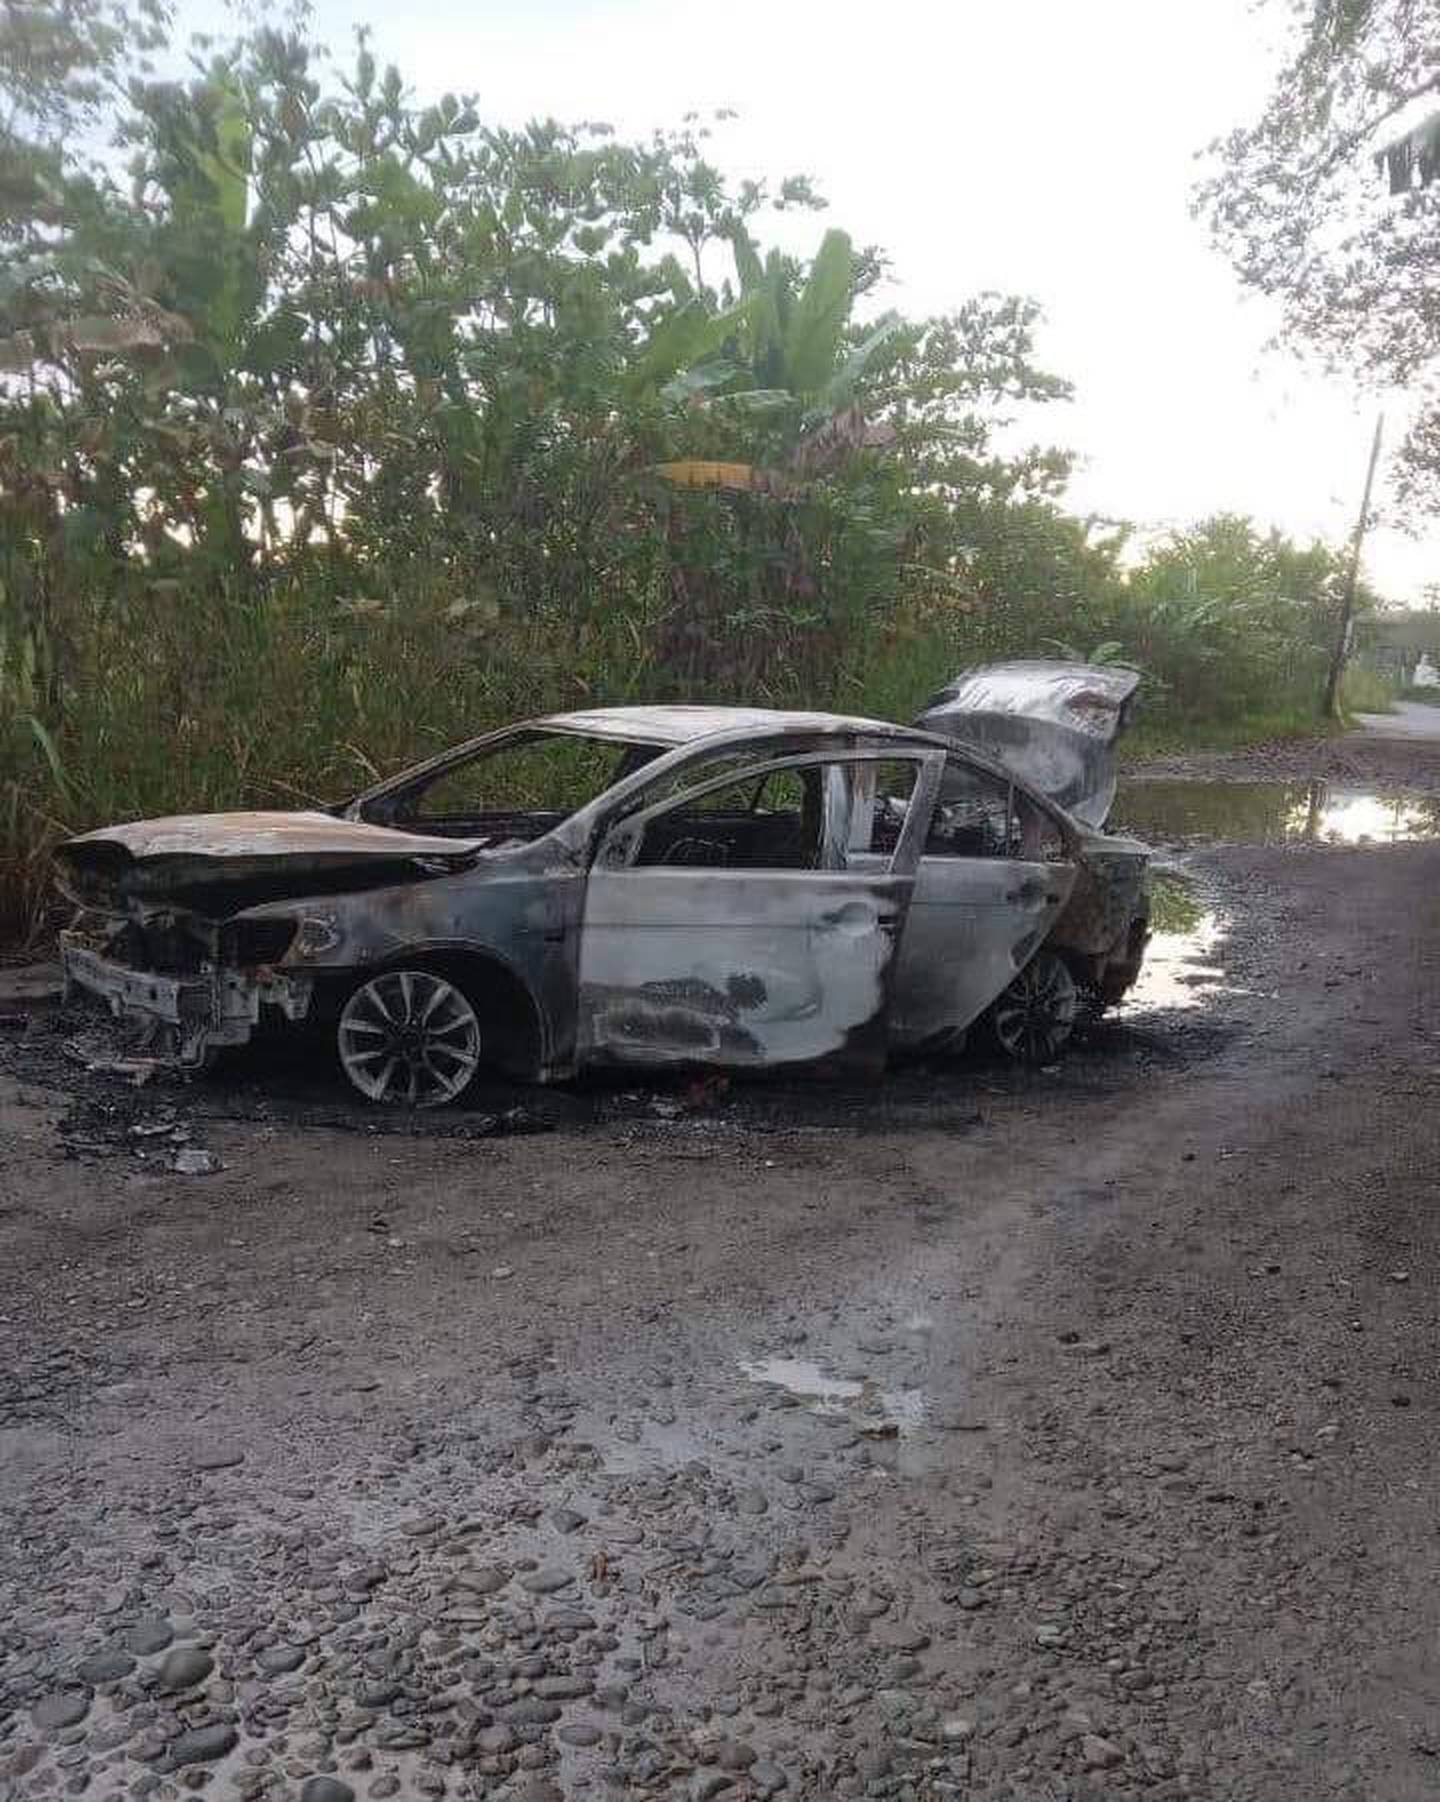 A tres kilómetros de una casa que agarraron a balazos en Moín, Limón hallaron cuatro carros quemados que en apariencia habrían participado en el tiroteo. Foto: Cortesía para LT